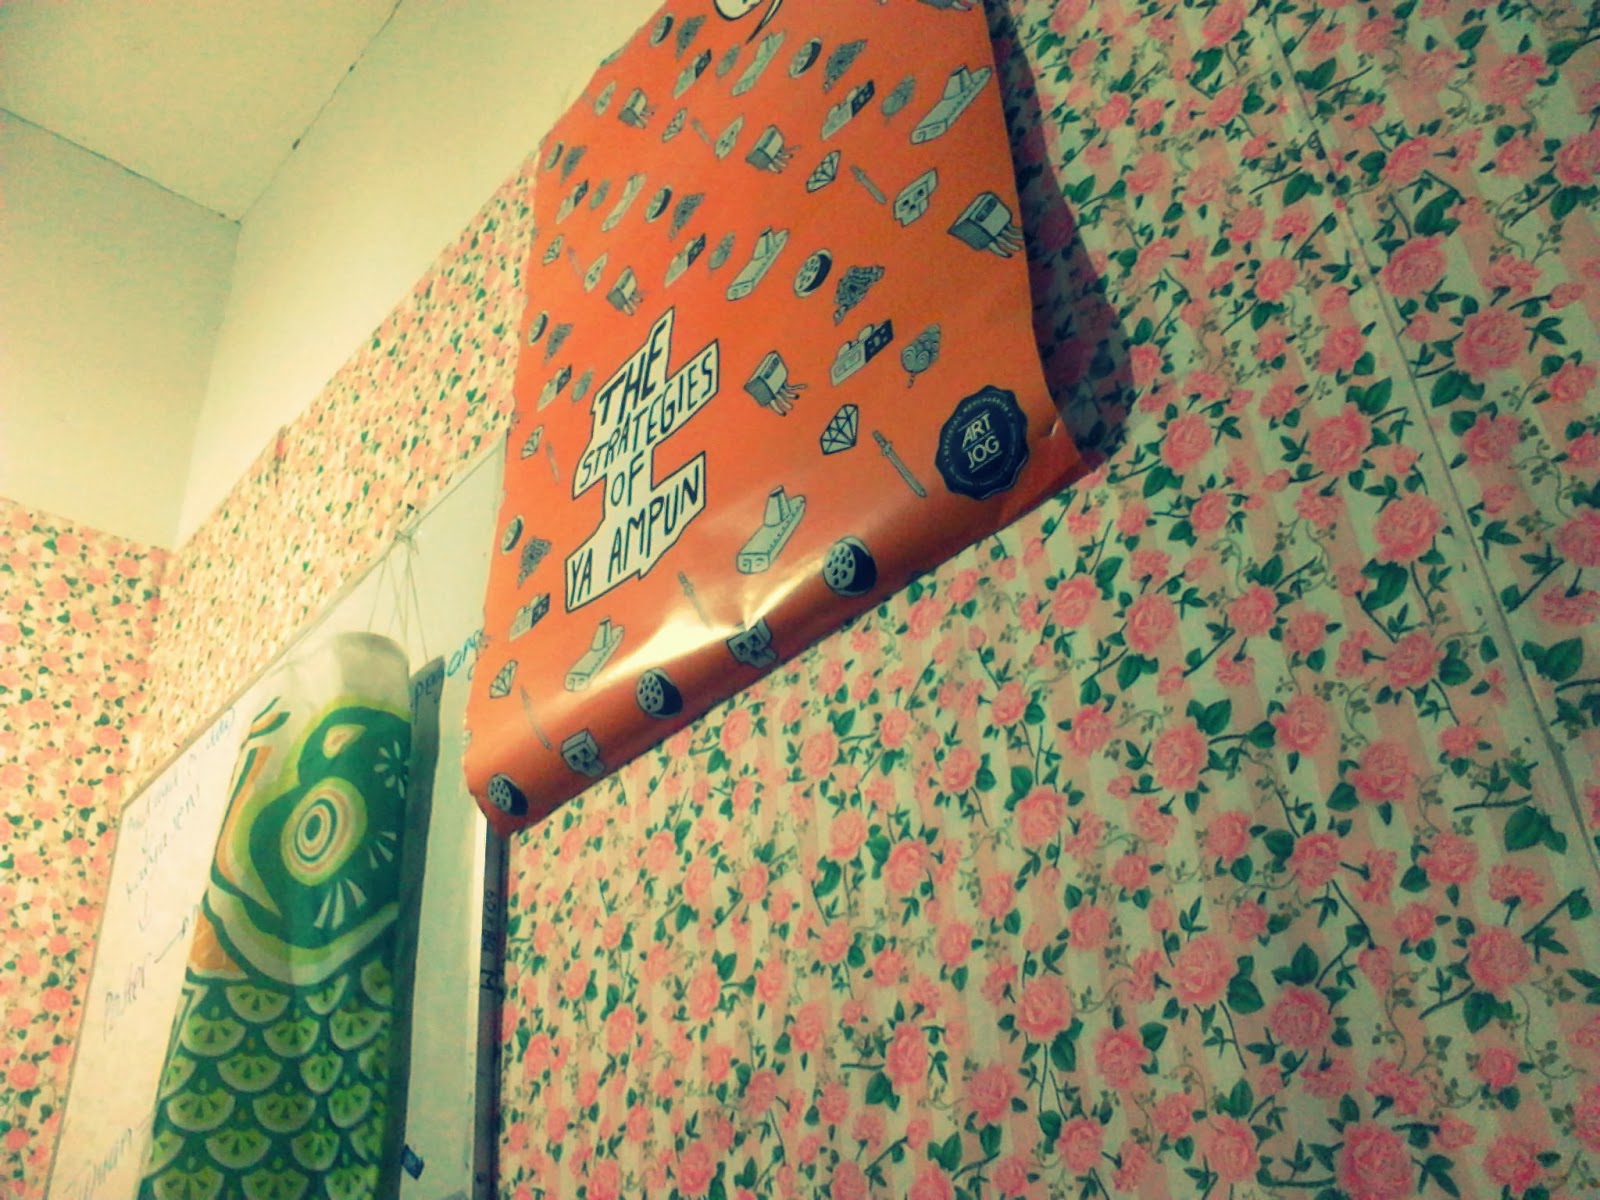 105 Wallpaper Dinding Kamar Murah Jogja  Wallpaper Dinding